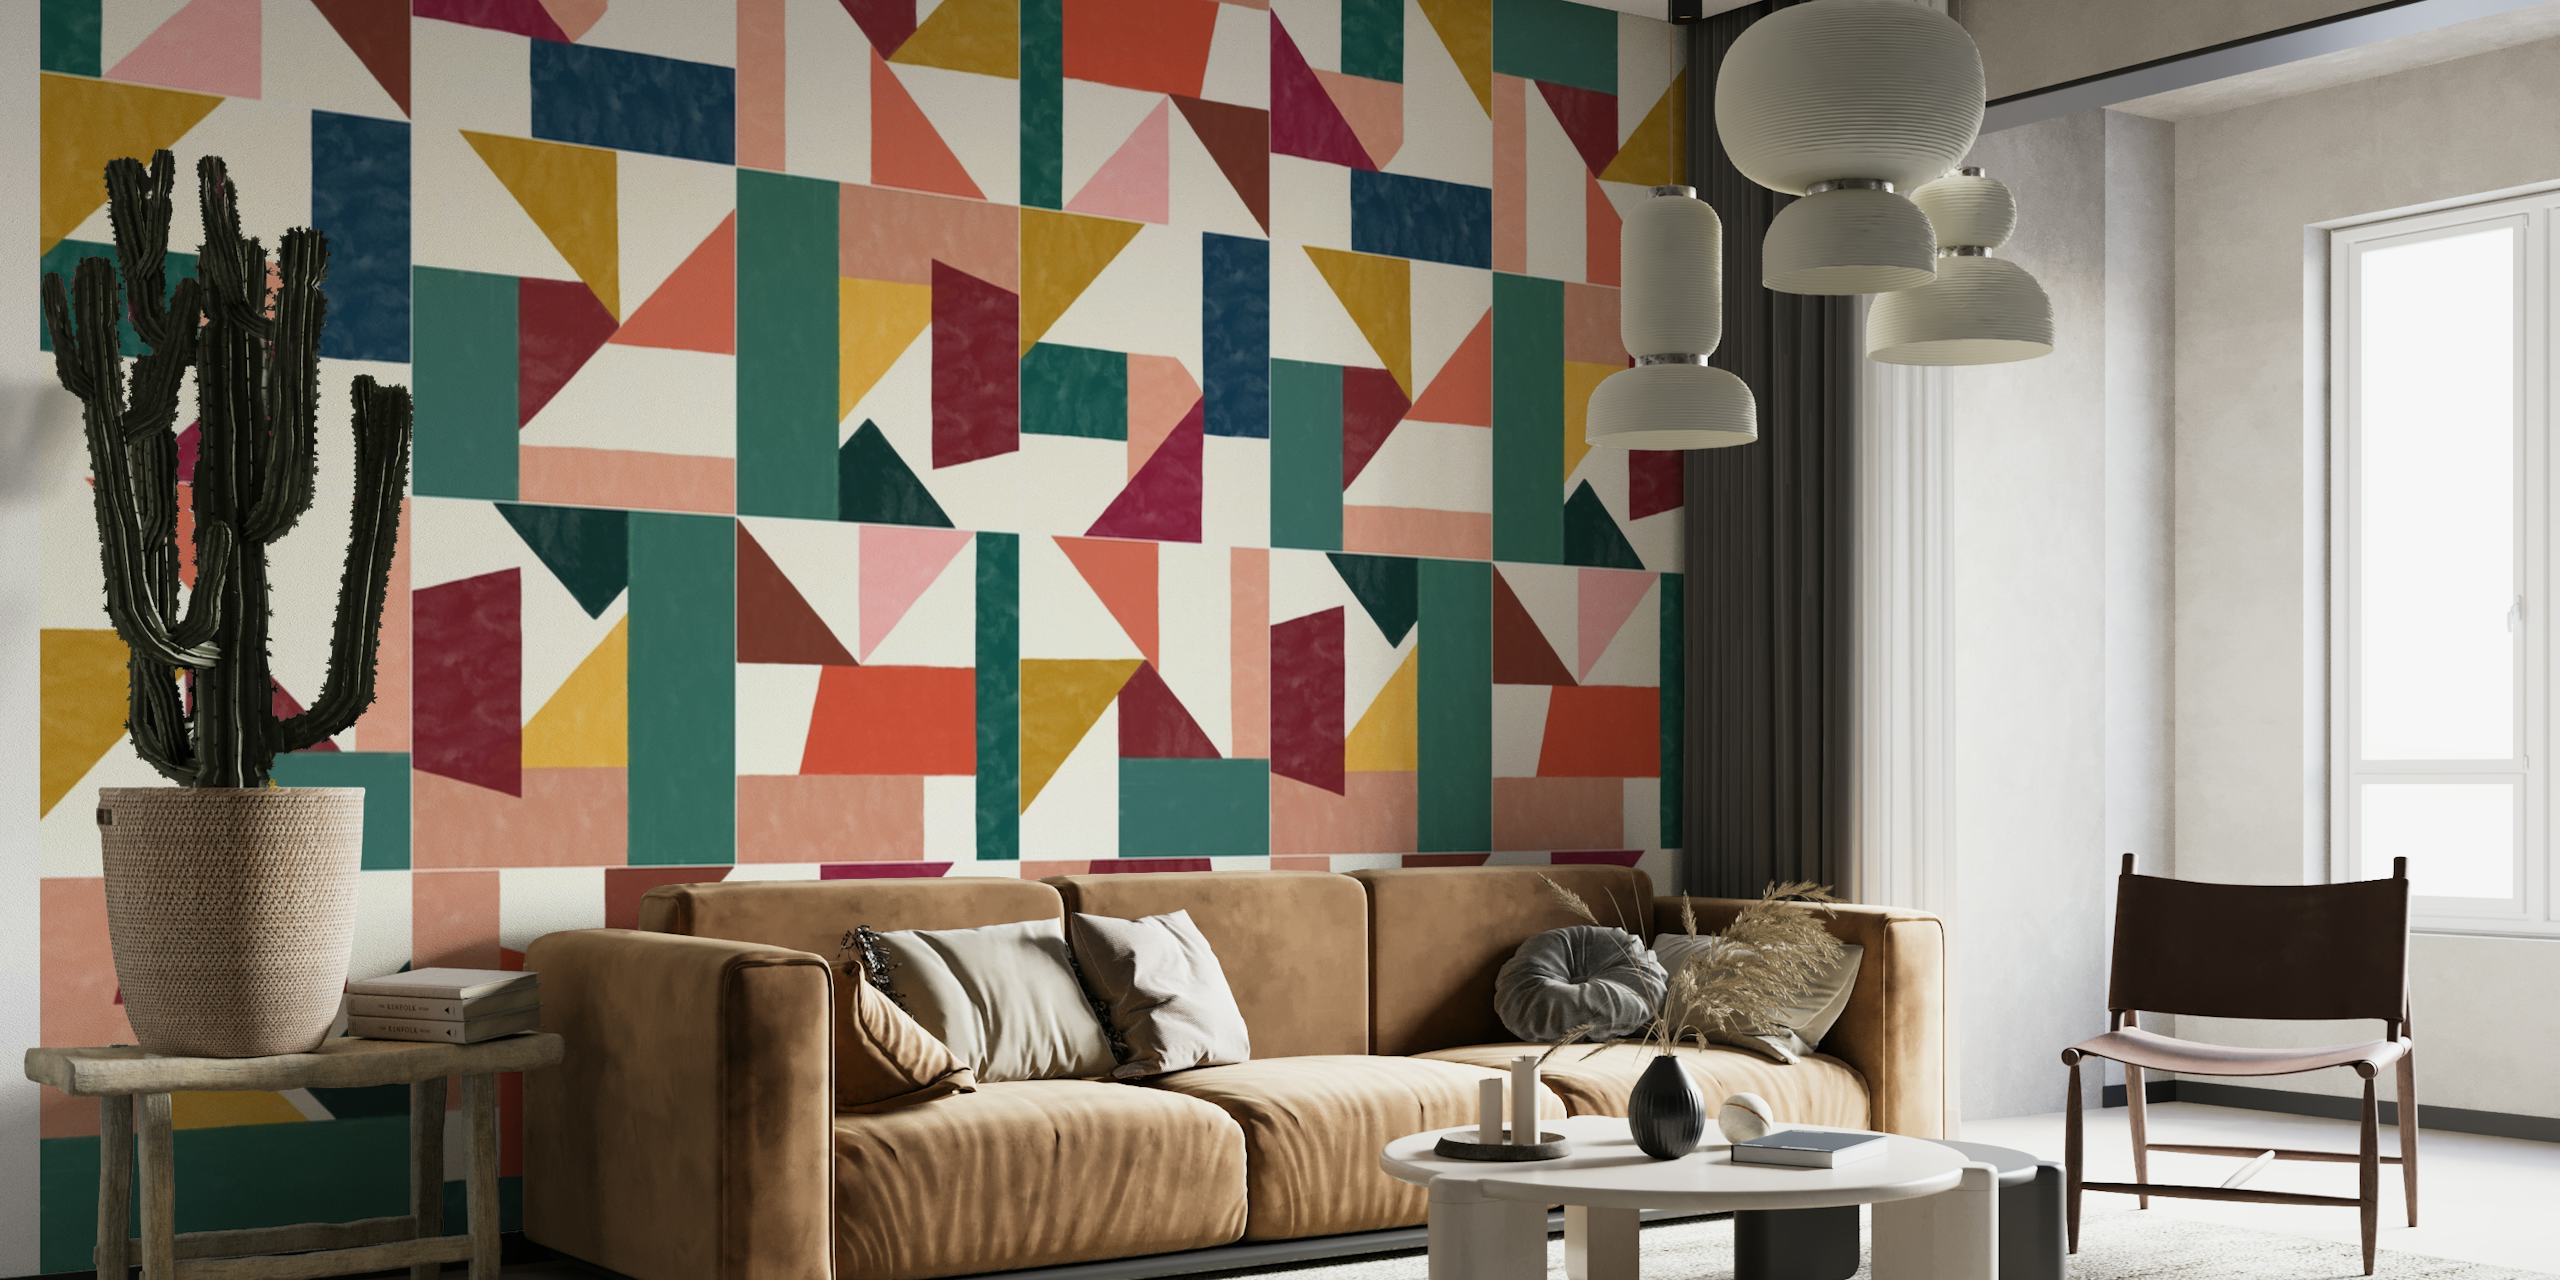 Tangram Wall Tiles One tapetit